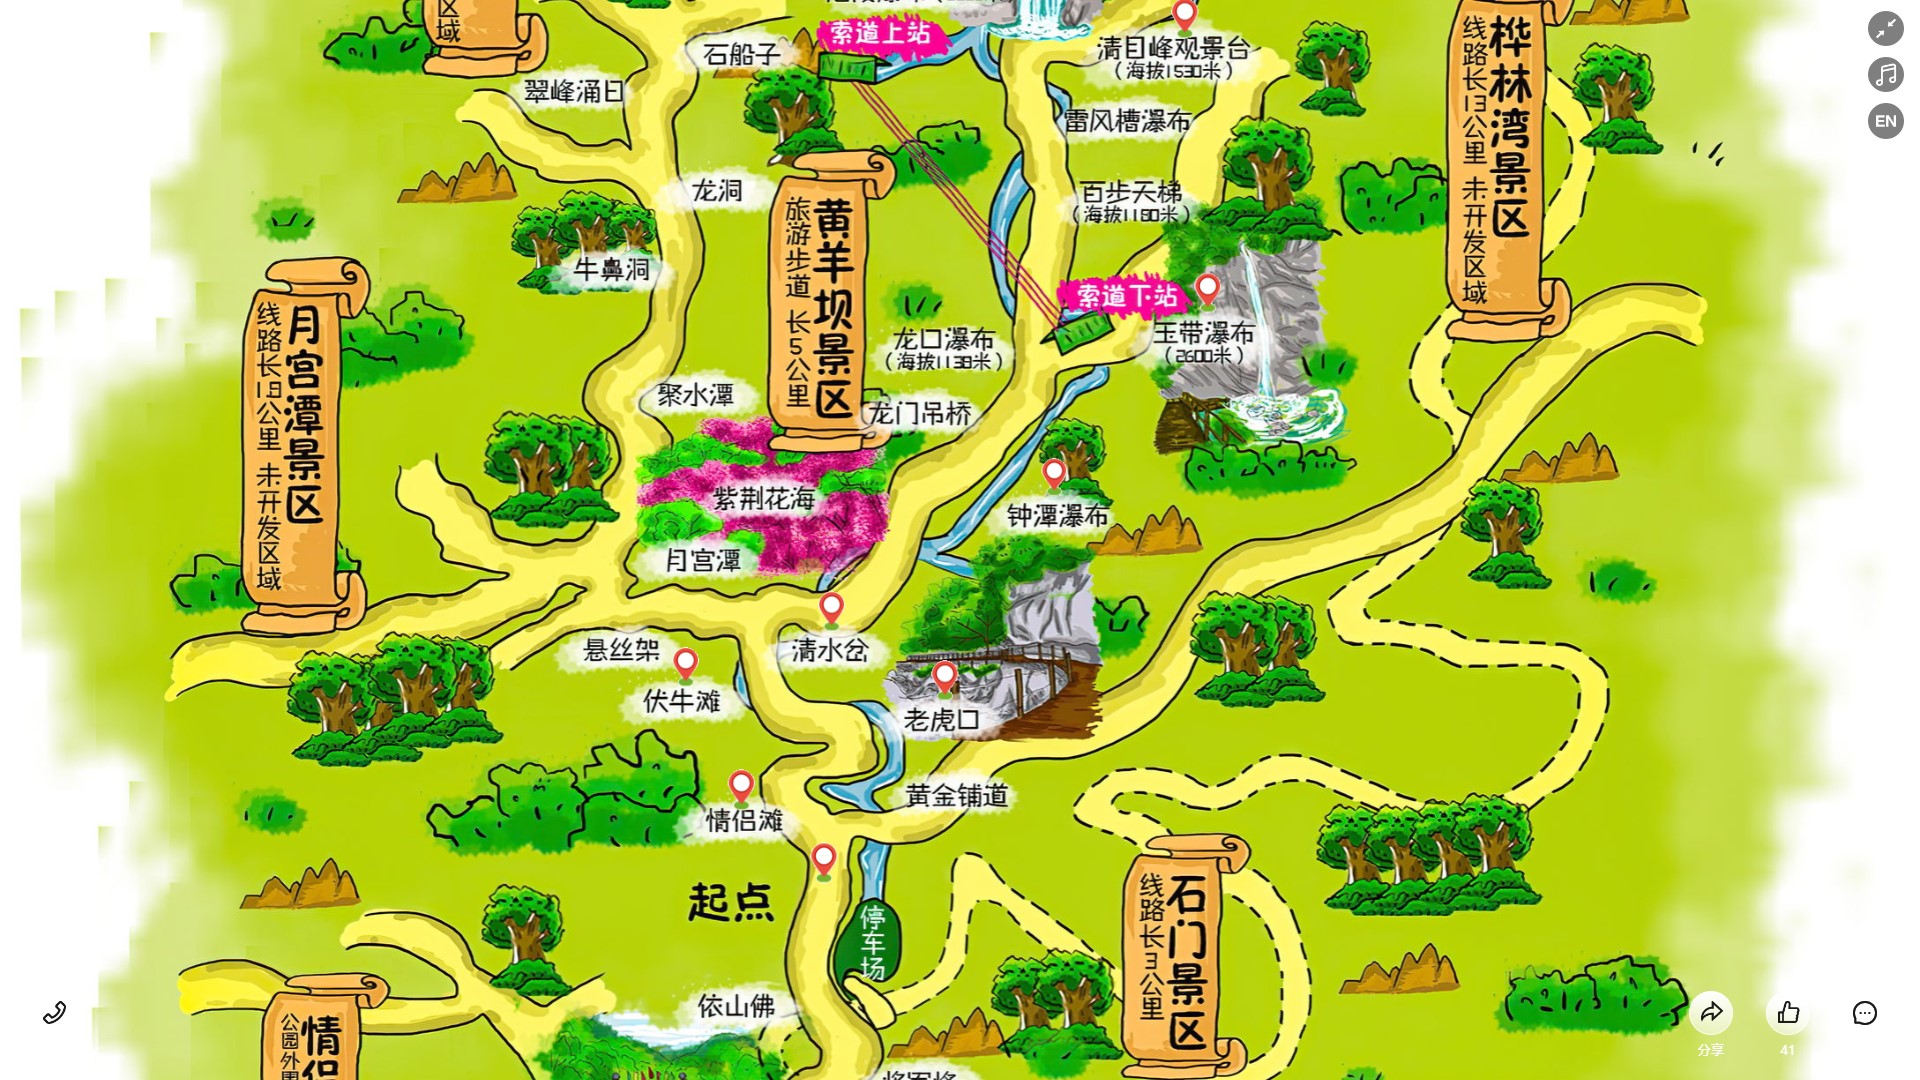 苏州景区导览系统